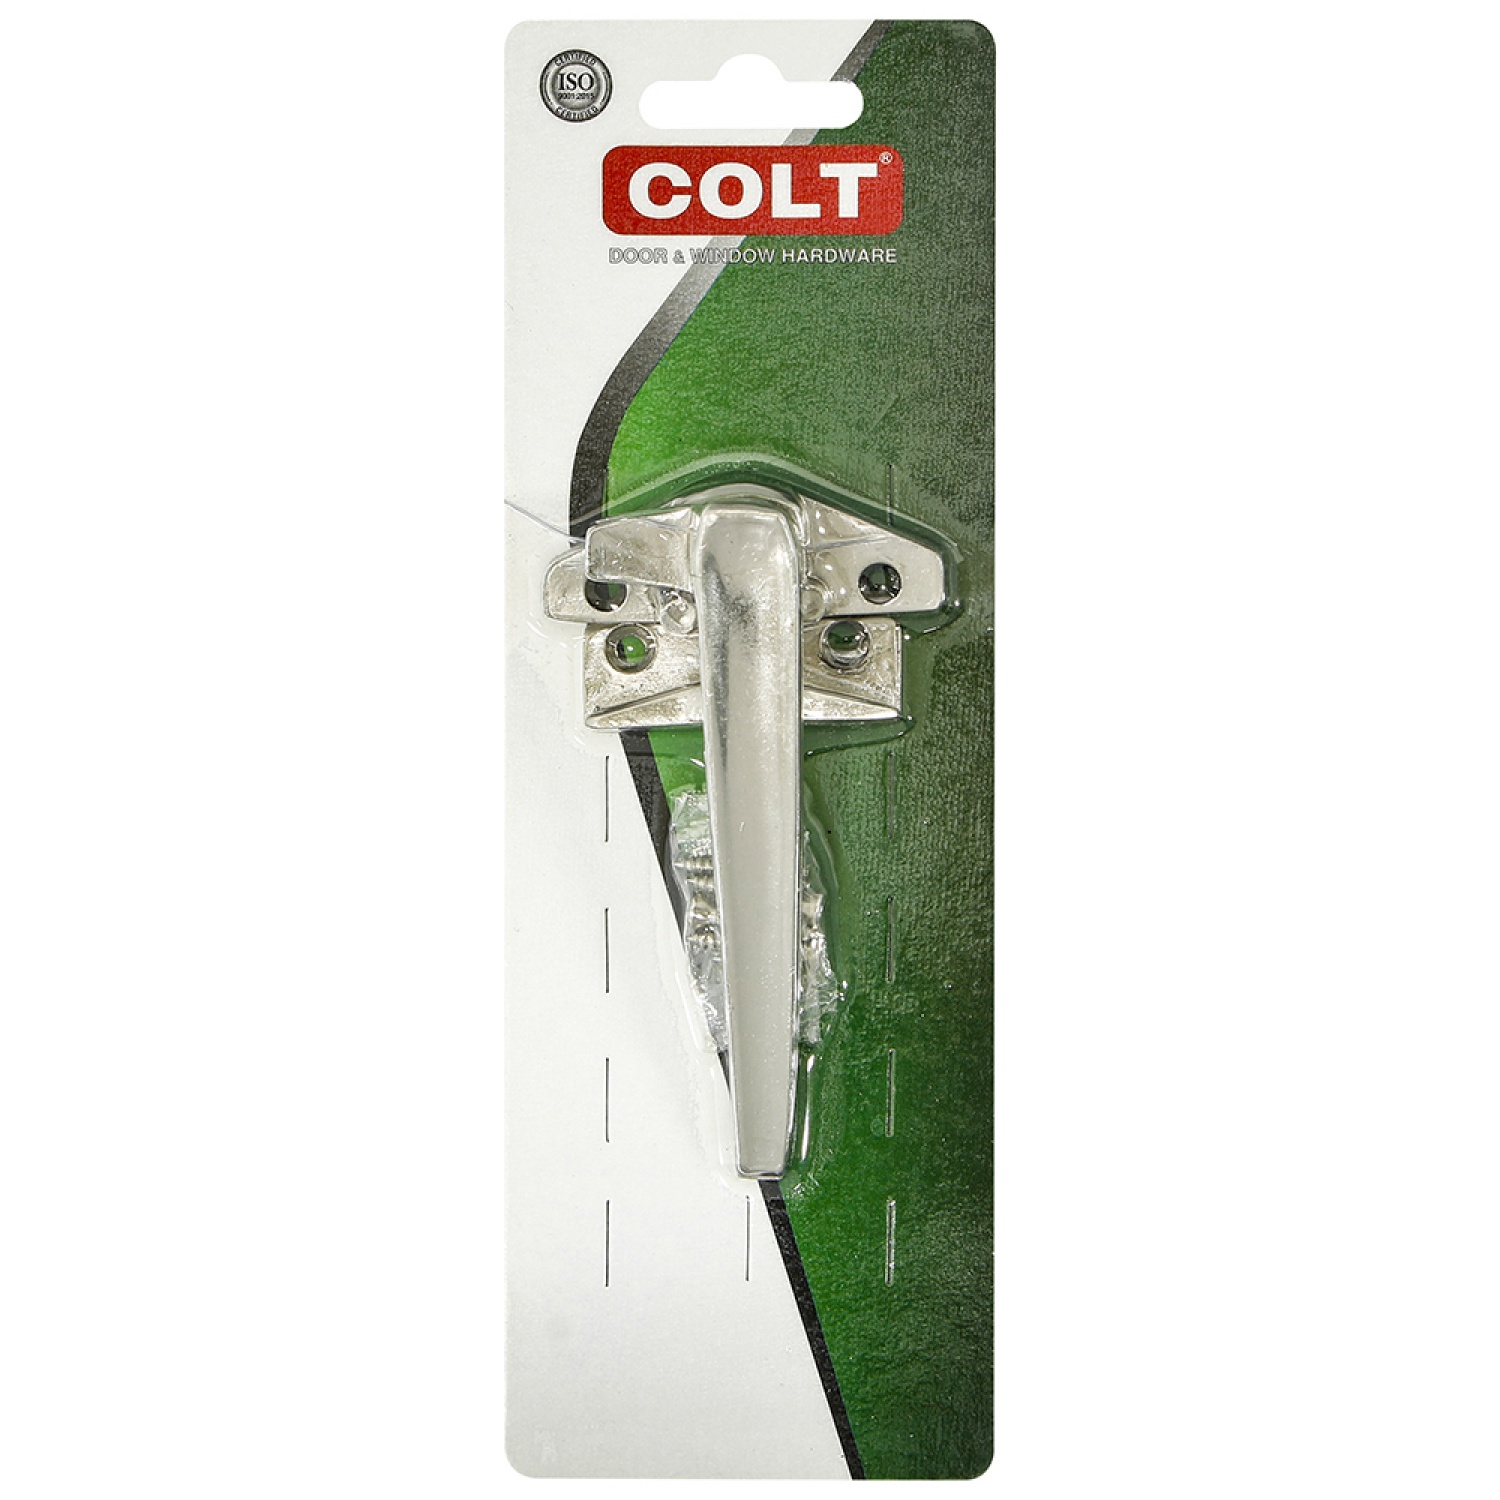 COLT มือจับบิดขวา COLT #11 สแตนเลส รุ่นแผง 1x1 (ฟิล์มหด) สีสแตนเลส